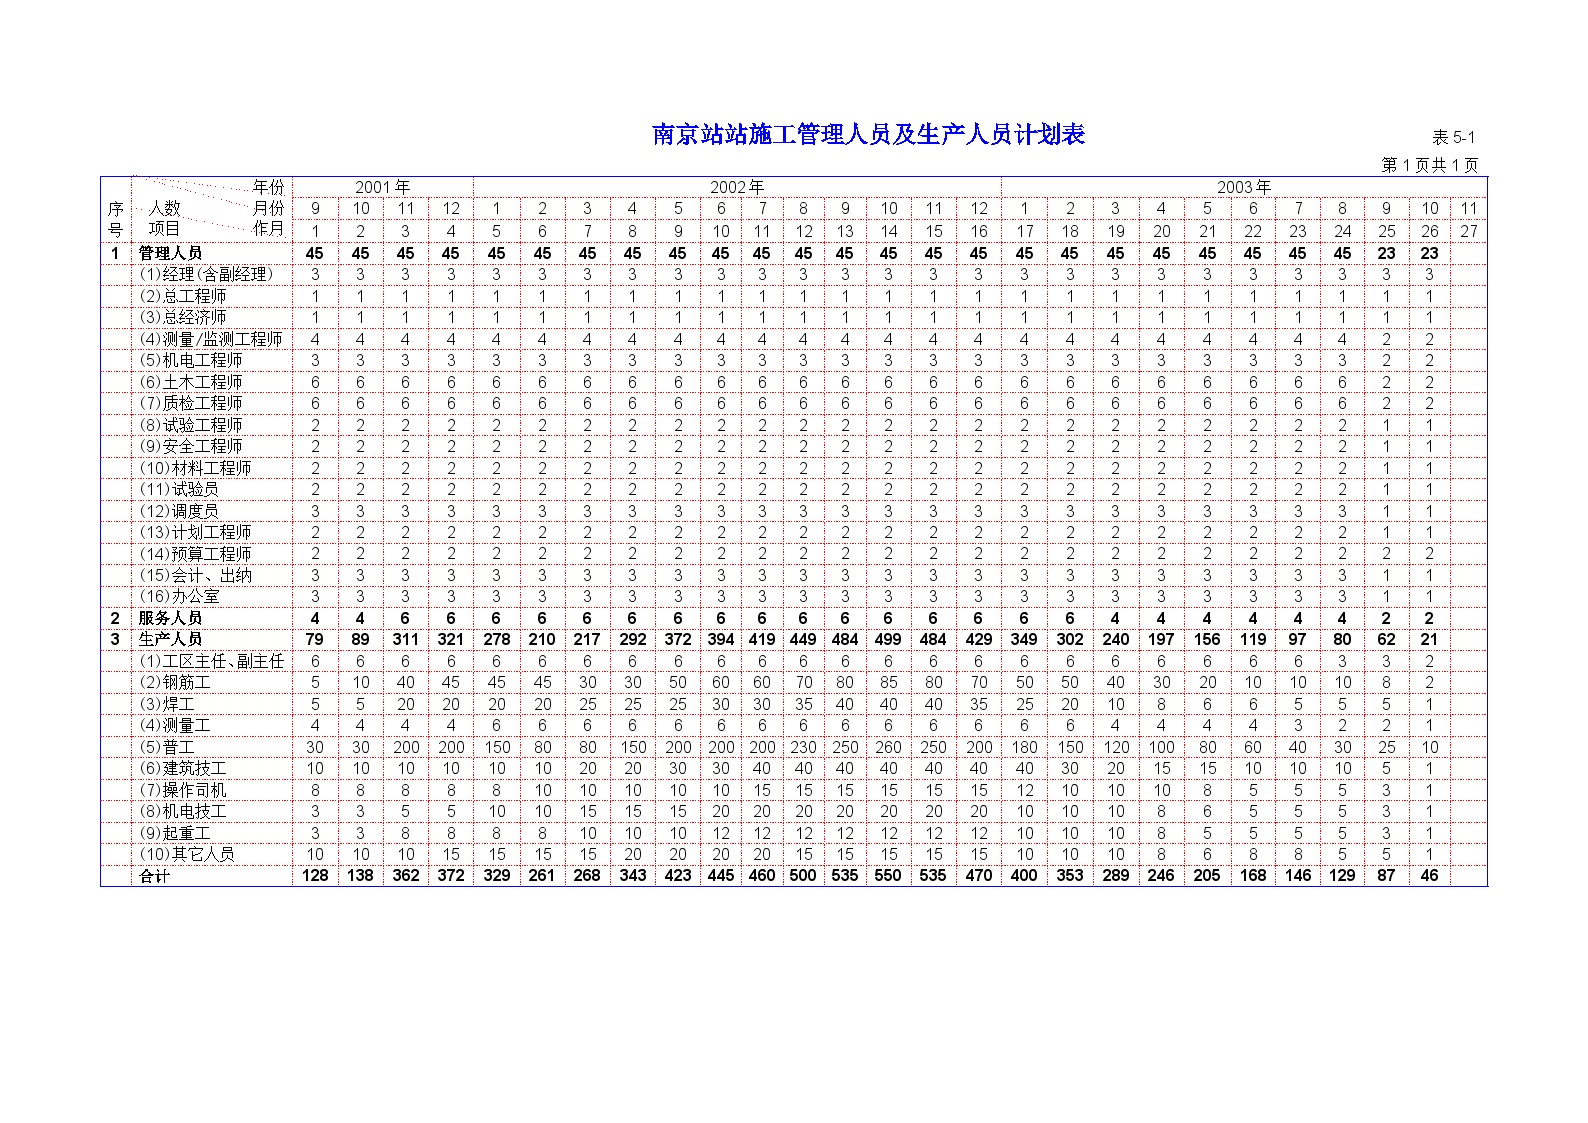 南京地铁一期工程 表5-1 劳动力计划表.DOC